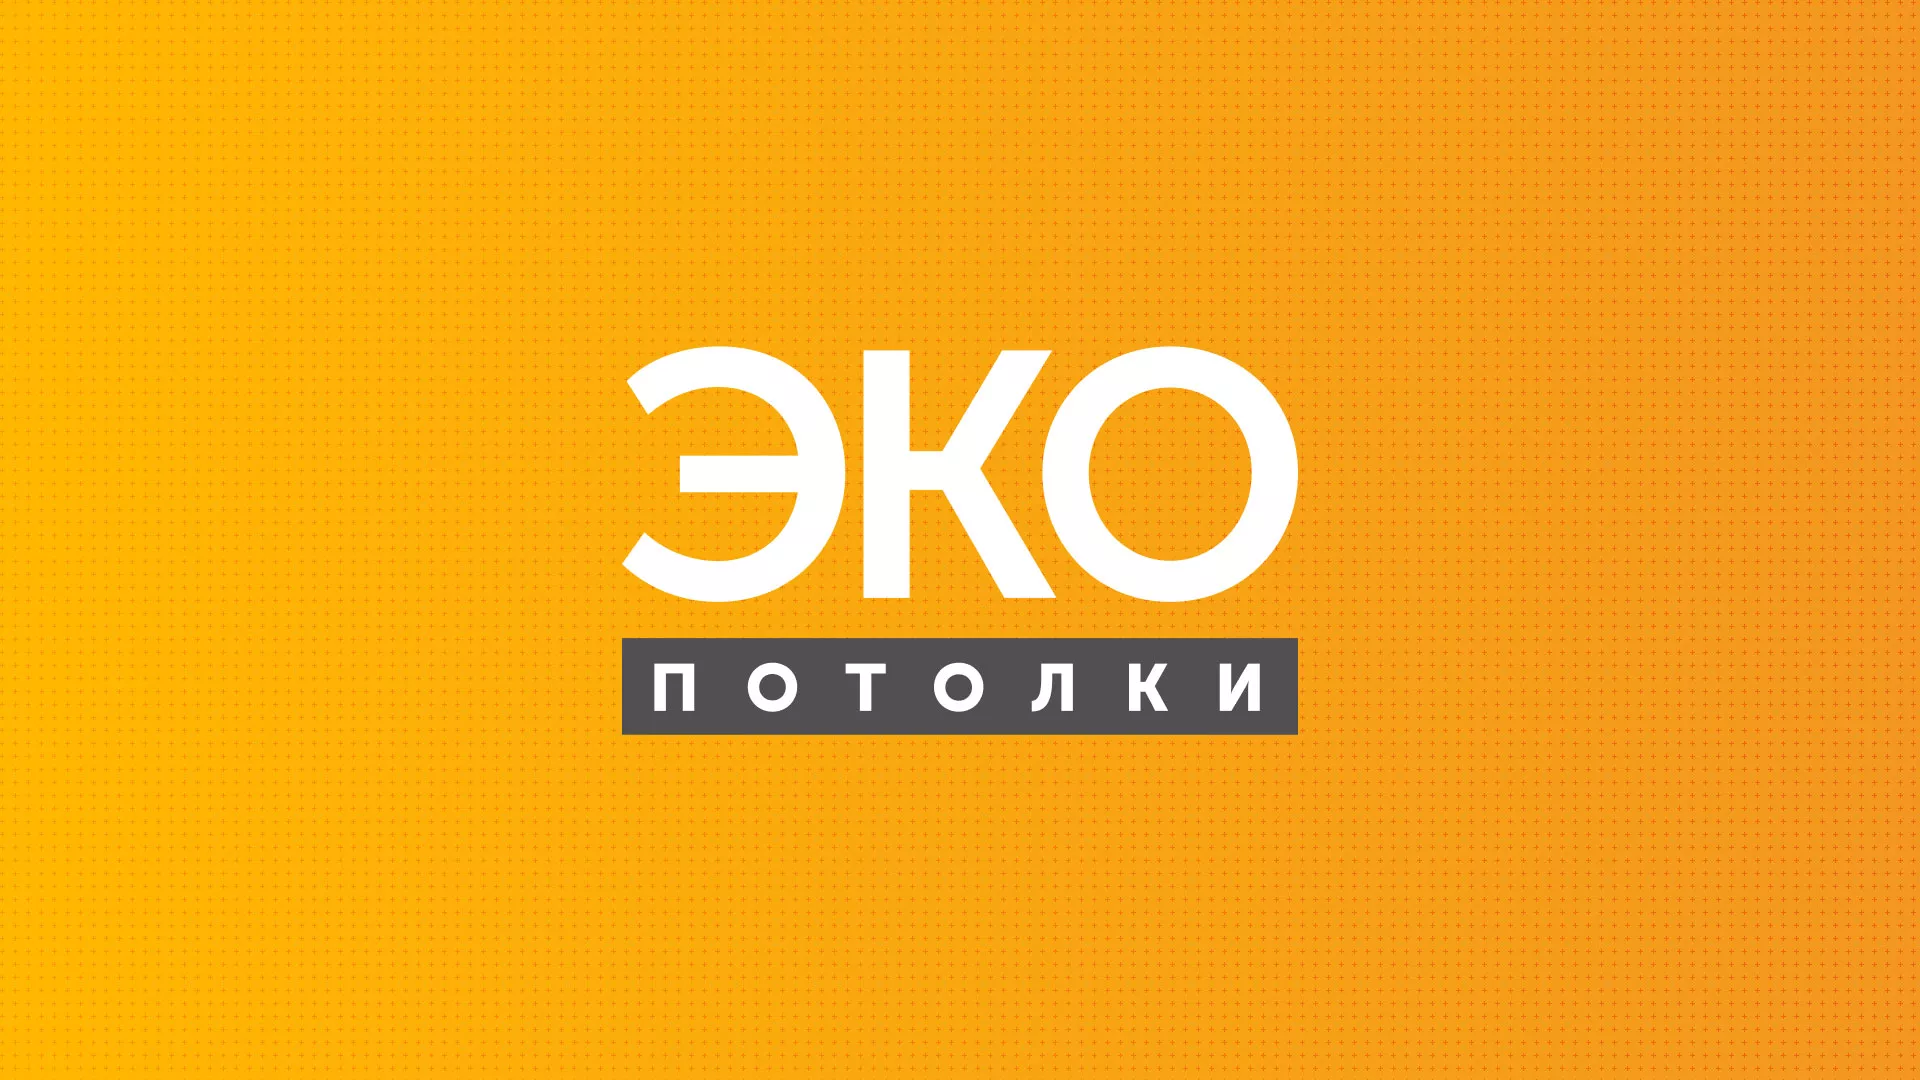 Разработка сайта по натяжным потолкам «Эко Потолки» в Шадринске